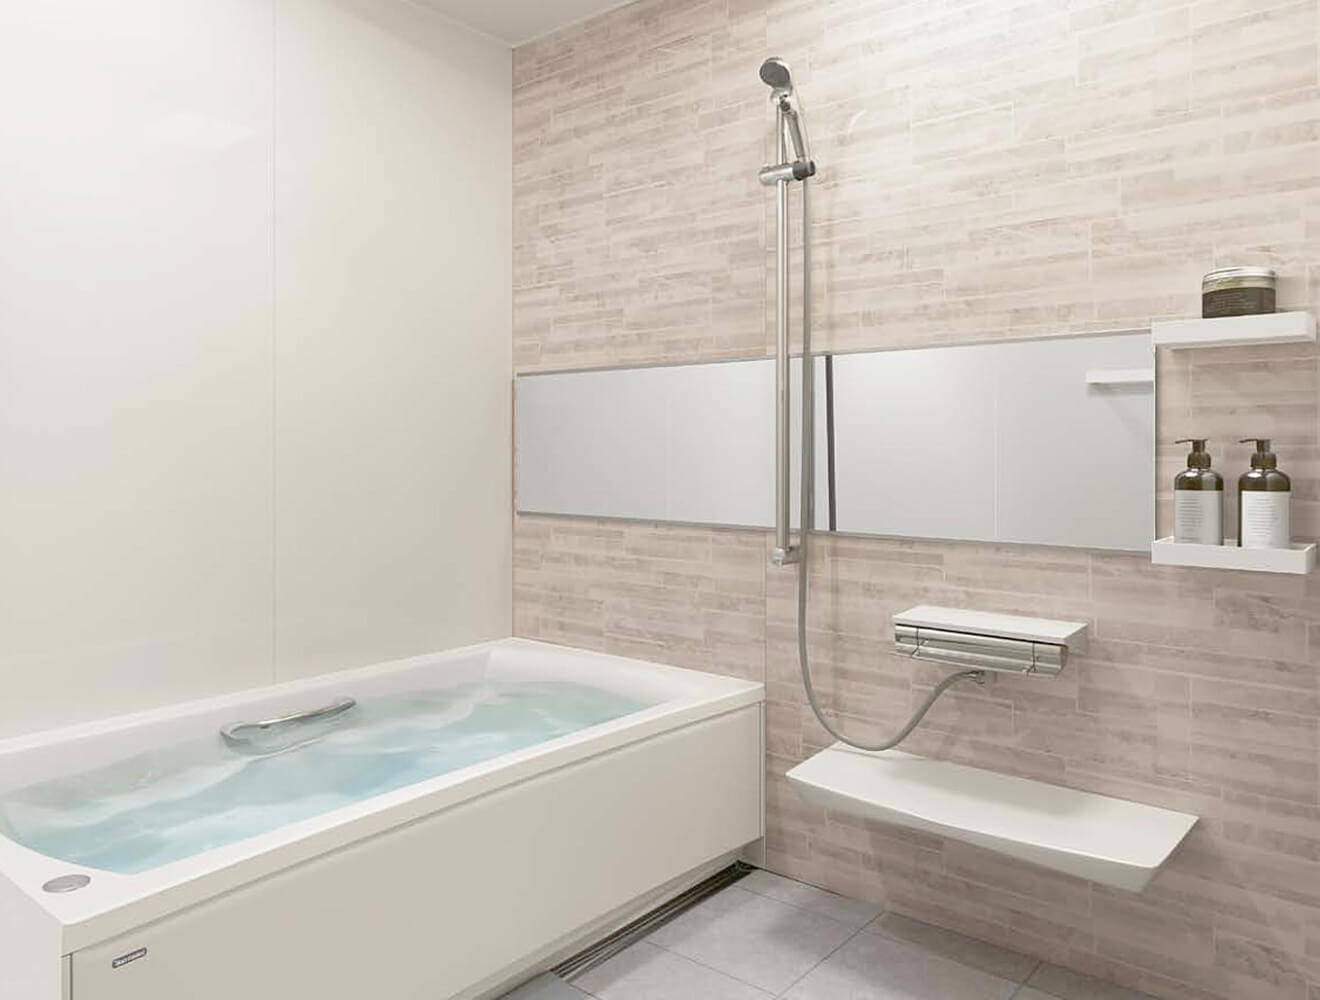 鹿児島リフォーム・グランスパ・1616サイズ・風呂浴室ユニットバス・人気浴槽06